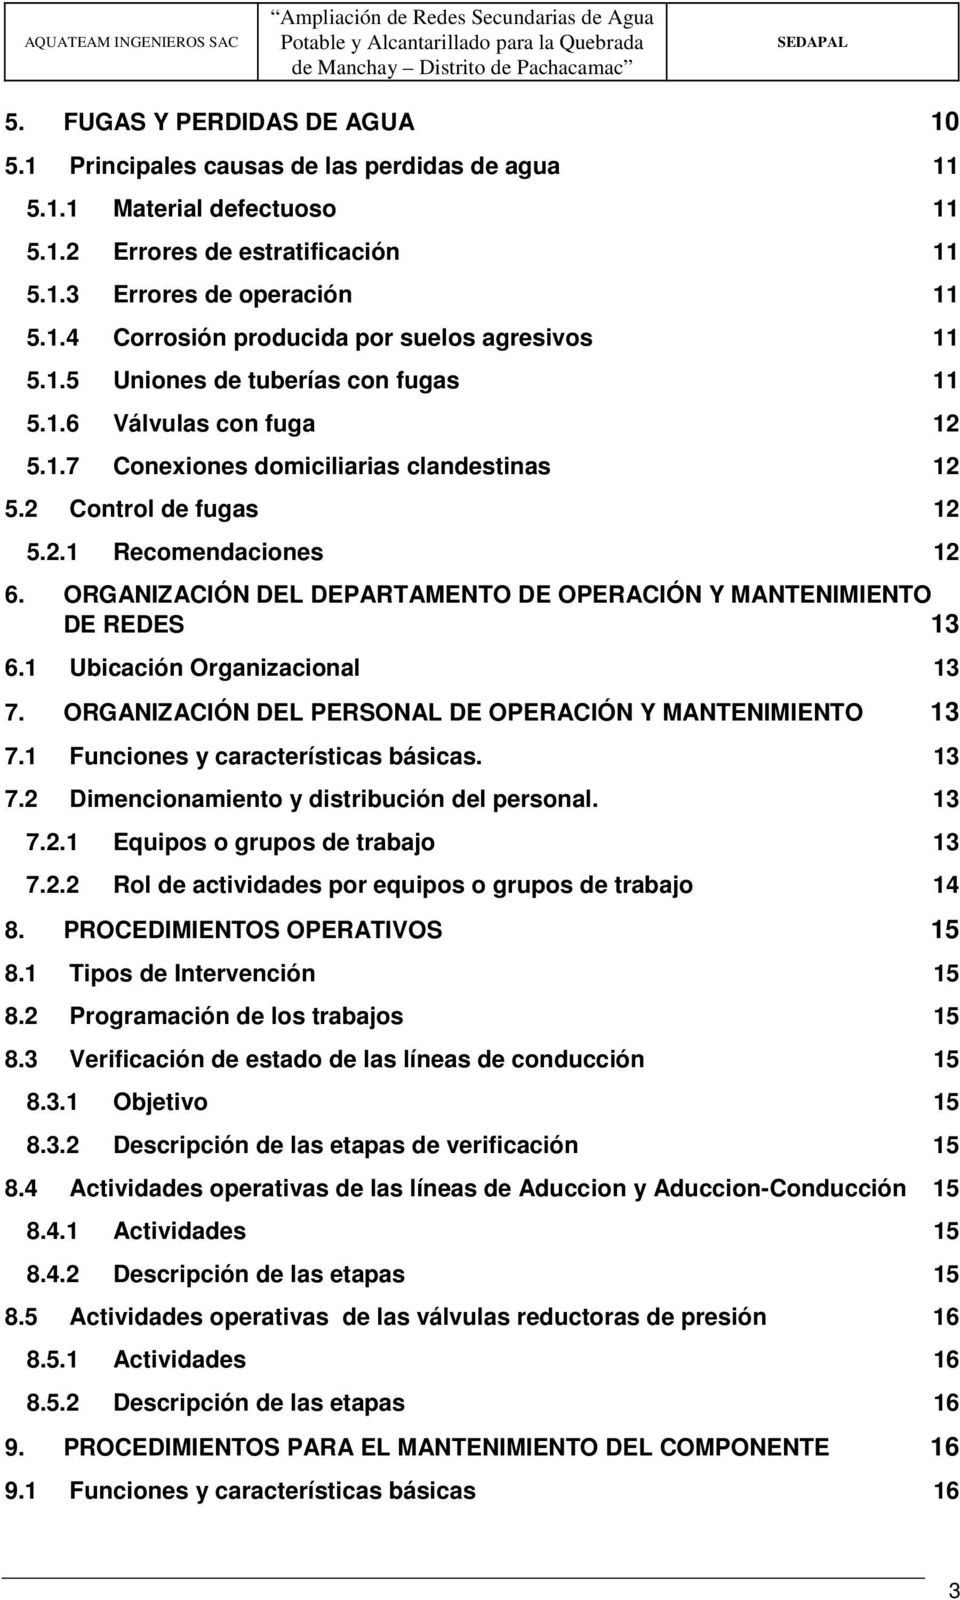 ORGANIZACIÓN DEL DEPARTAMENTO DE OPERACIÓN Y MANTENIMIENTO DE REDES 13 6.1 Ubicación Organizacional 13 7. ORGANIZACIÓN DEL PERSONAL DE OPERACIÓN Y MANTENIMIENTO 13 7.